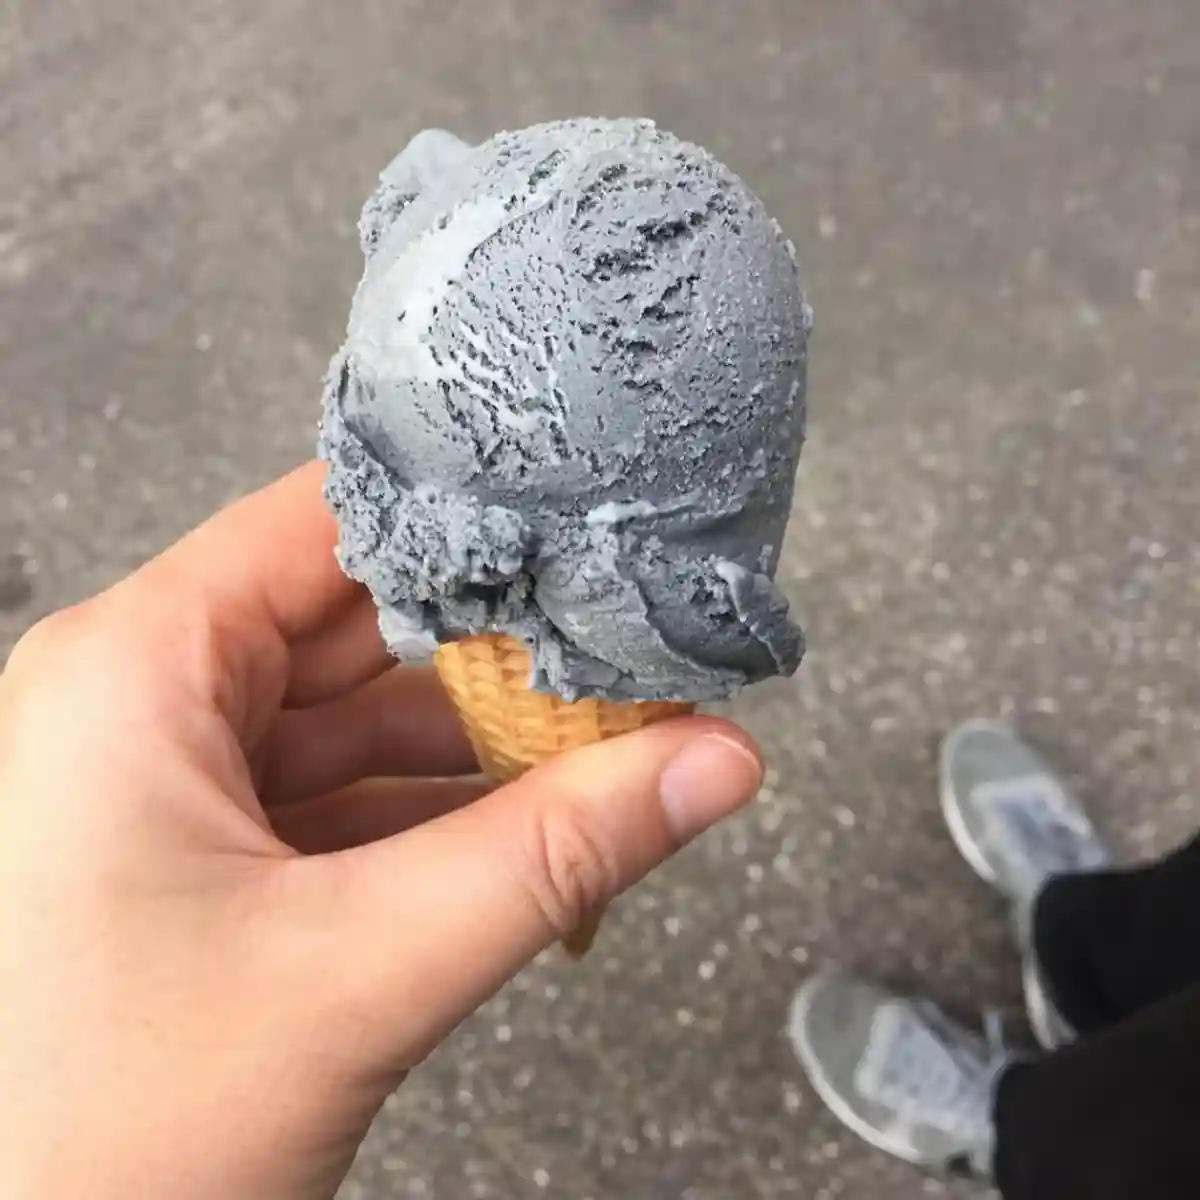 Немецкое мороженое: Бетон, ливер, свекла. Фото: instagram.com/__birte_k